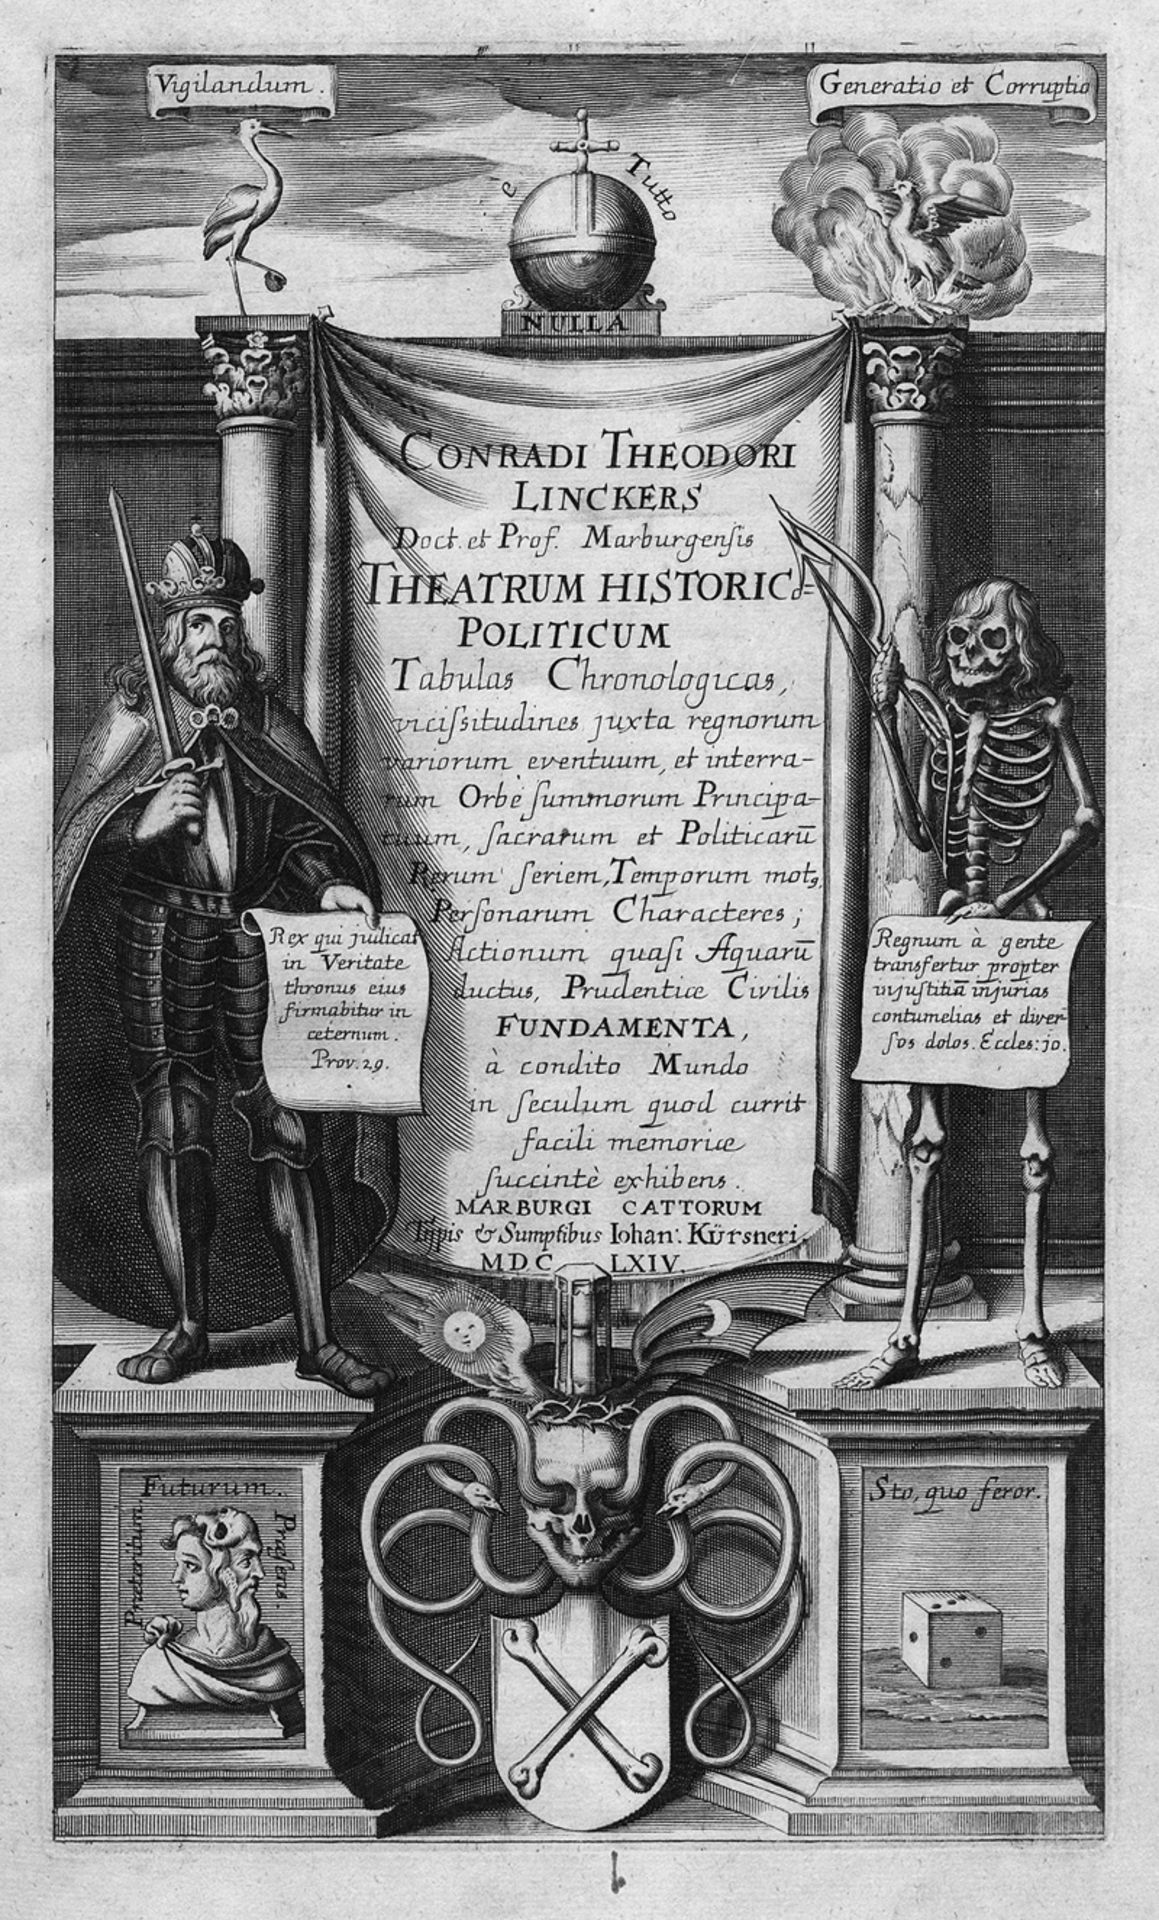 Linker, Conrad Theodor: Theatrum Historico-Politicum